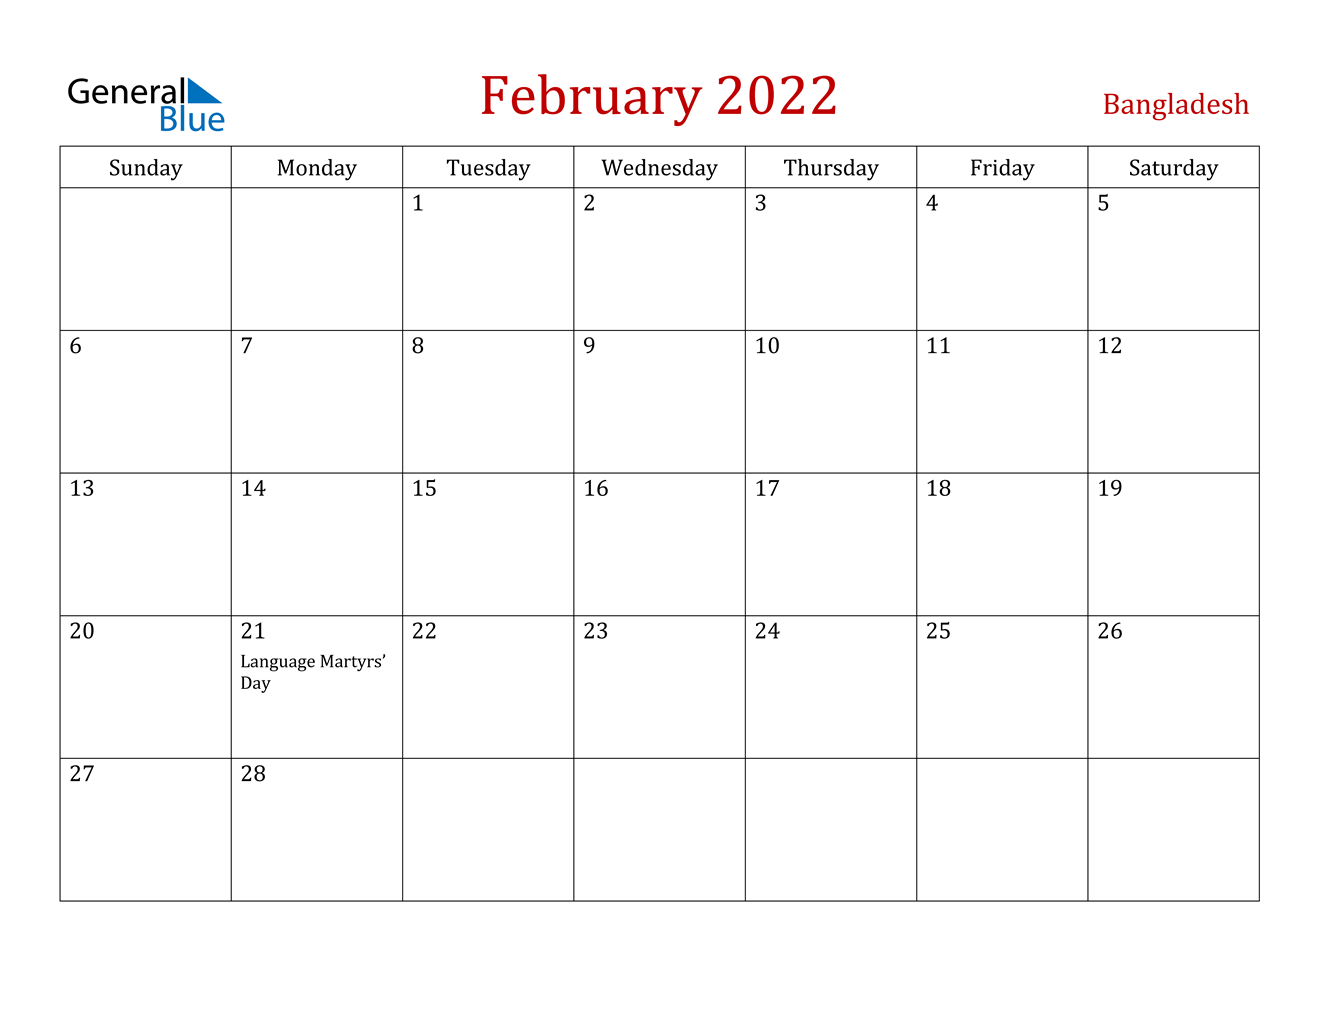 February 2022 Calendar - Bangladesh